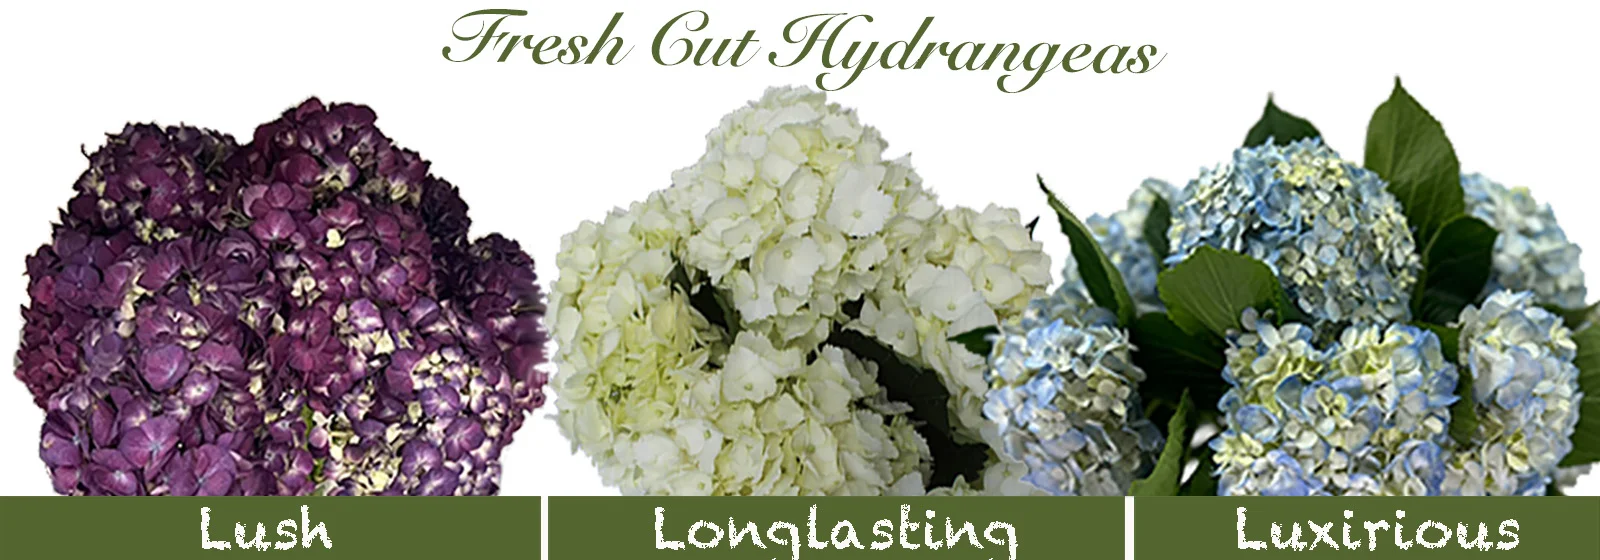 Fresh Cut Hydrangeas